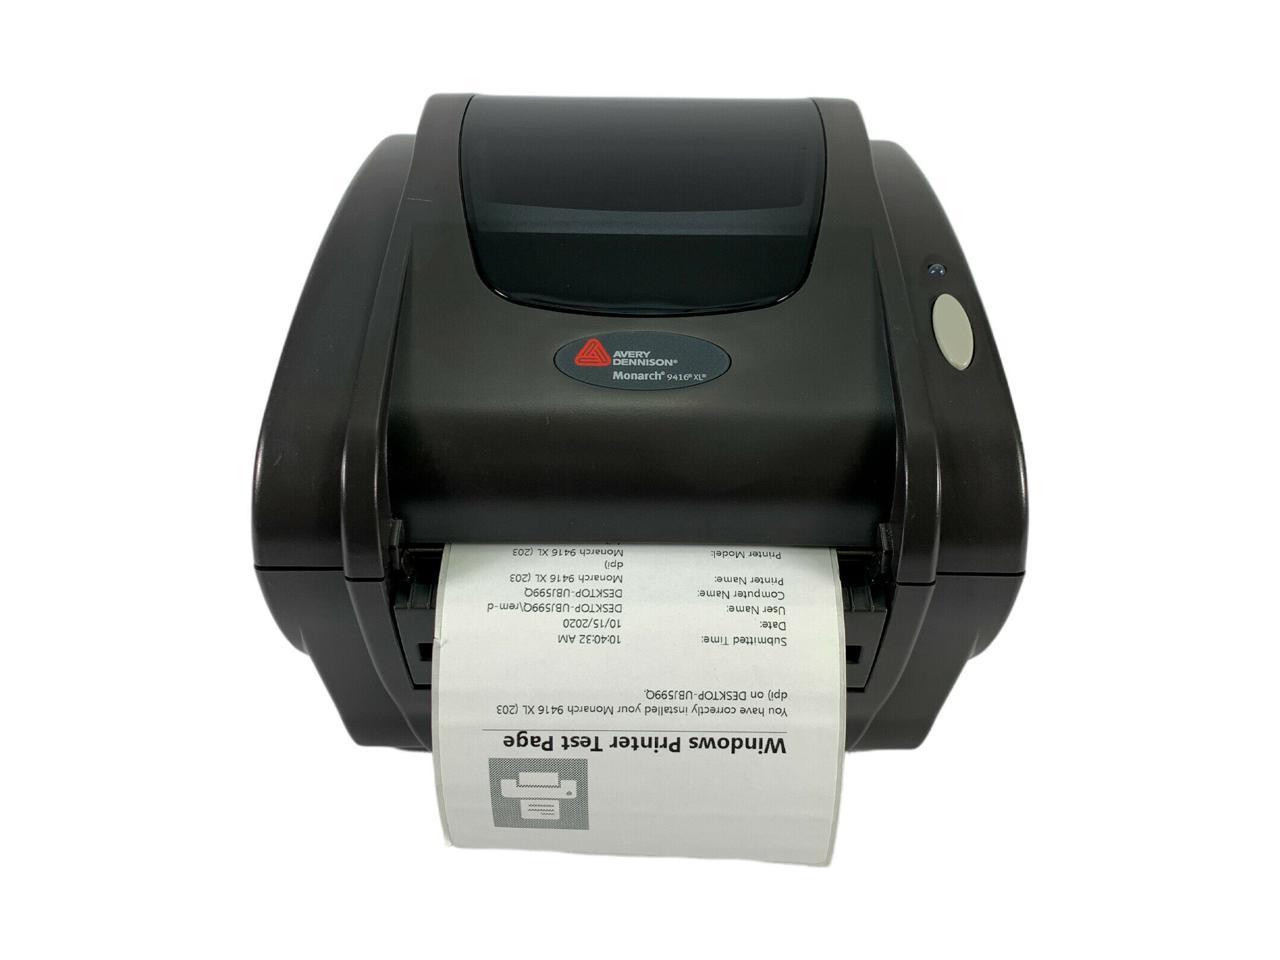 Monochrome Label Print Renewed Monarch 9416 XL Direct Thermal Printer